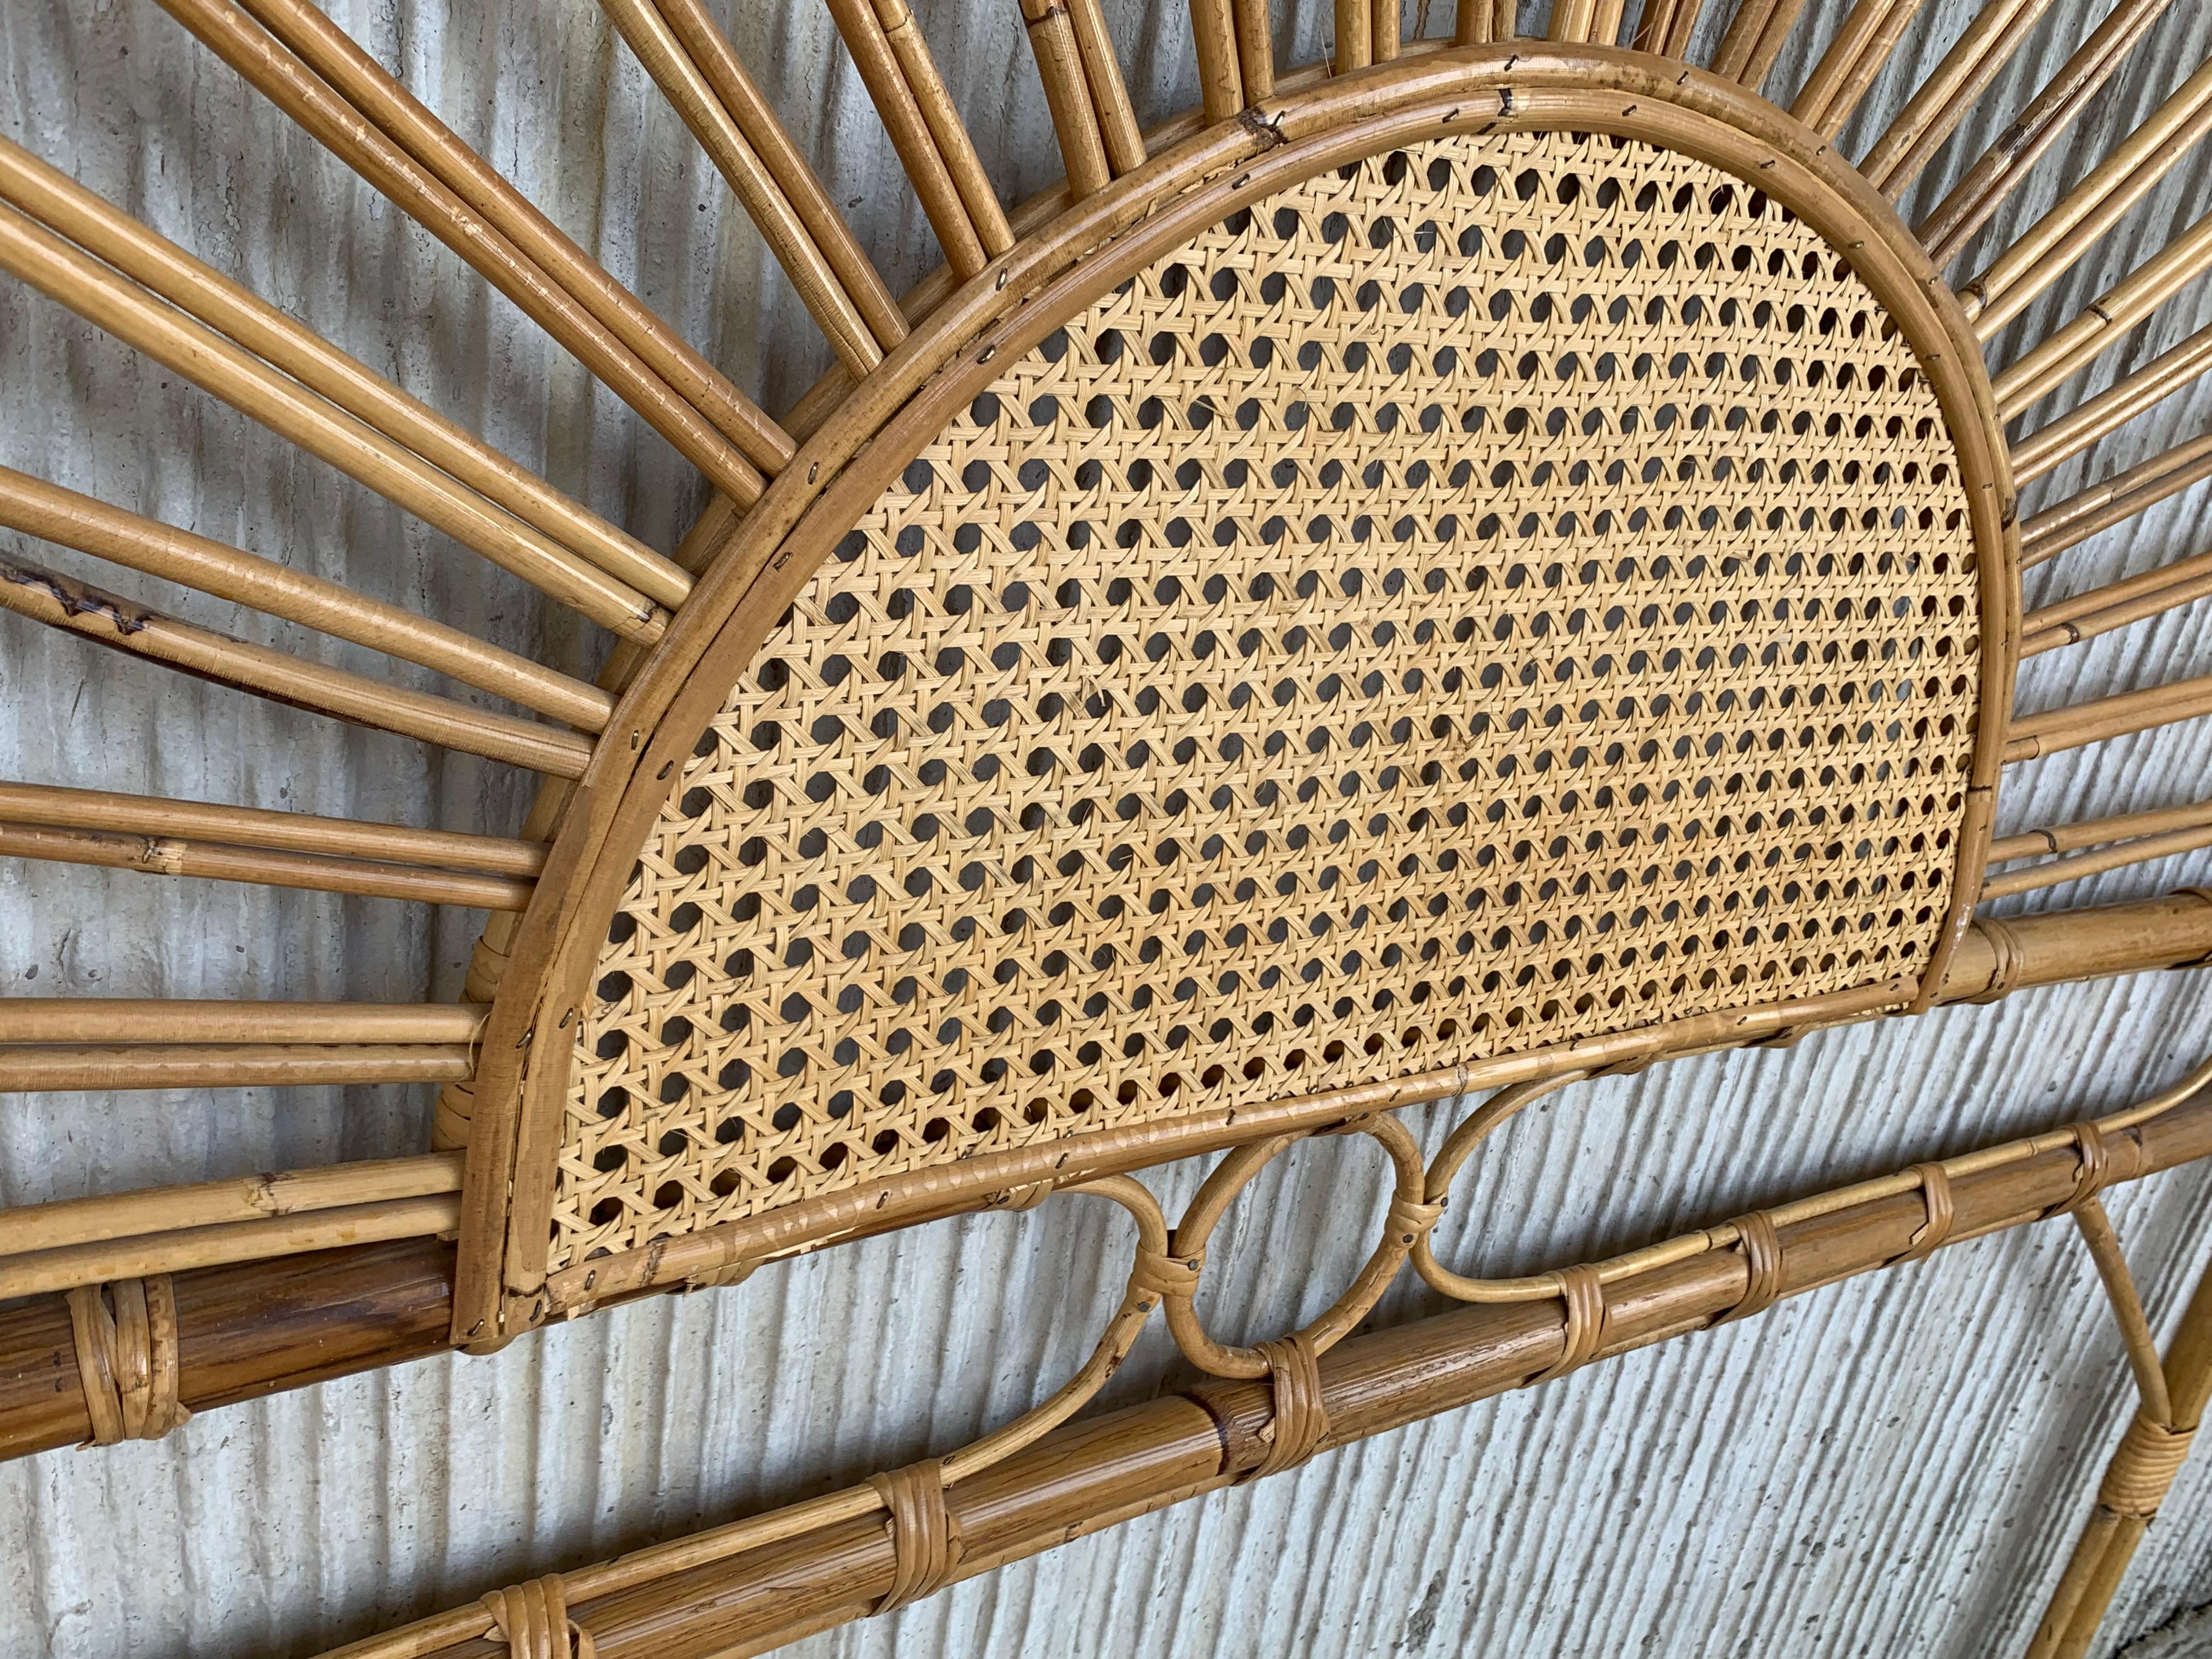 Tête de lit en bambou et bois courbé, de style moderne du milieu du siècle, à laquelle vous pouvez ajouter deux tables de nuit assorties avec tiroirs en parquet

Dimensions de la table de nuit : H 29.52in, W 18.50in, D 13in
Mesures de la tête de